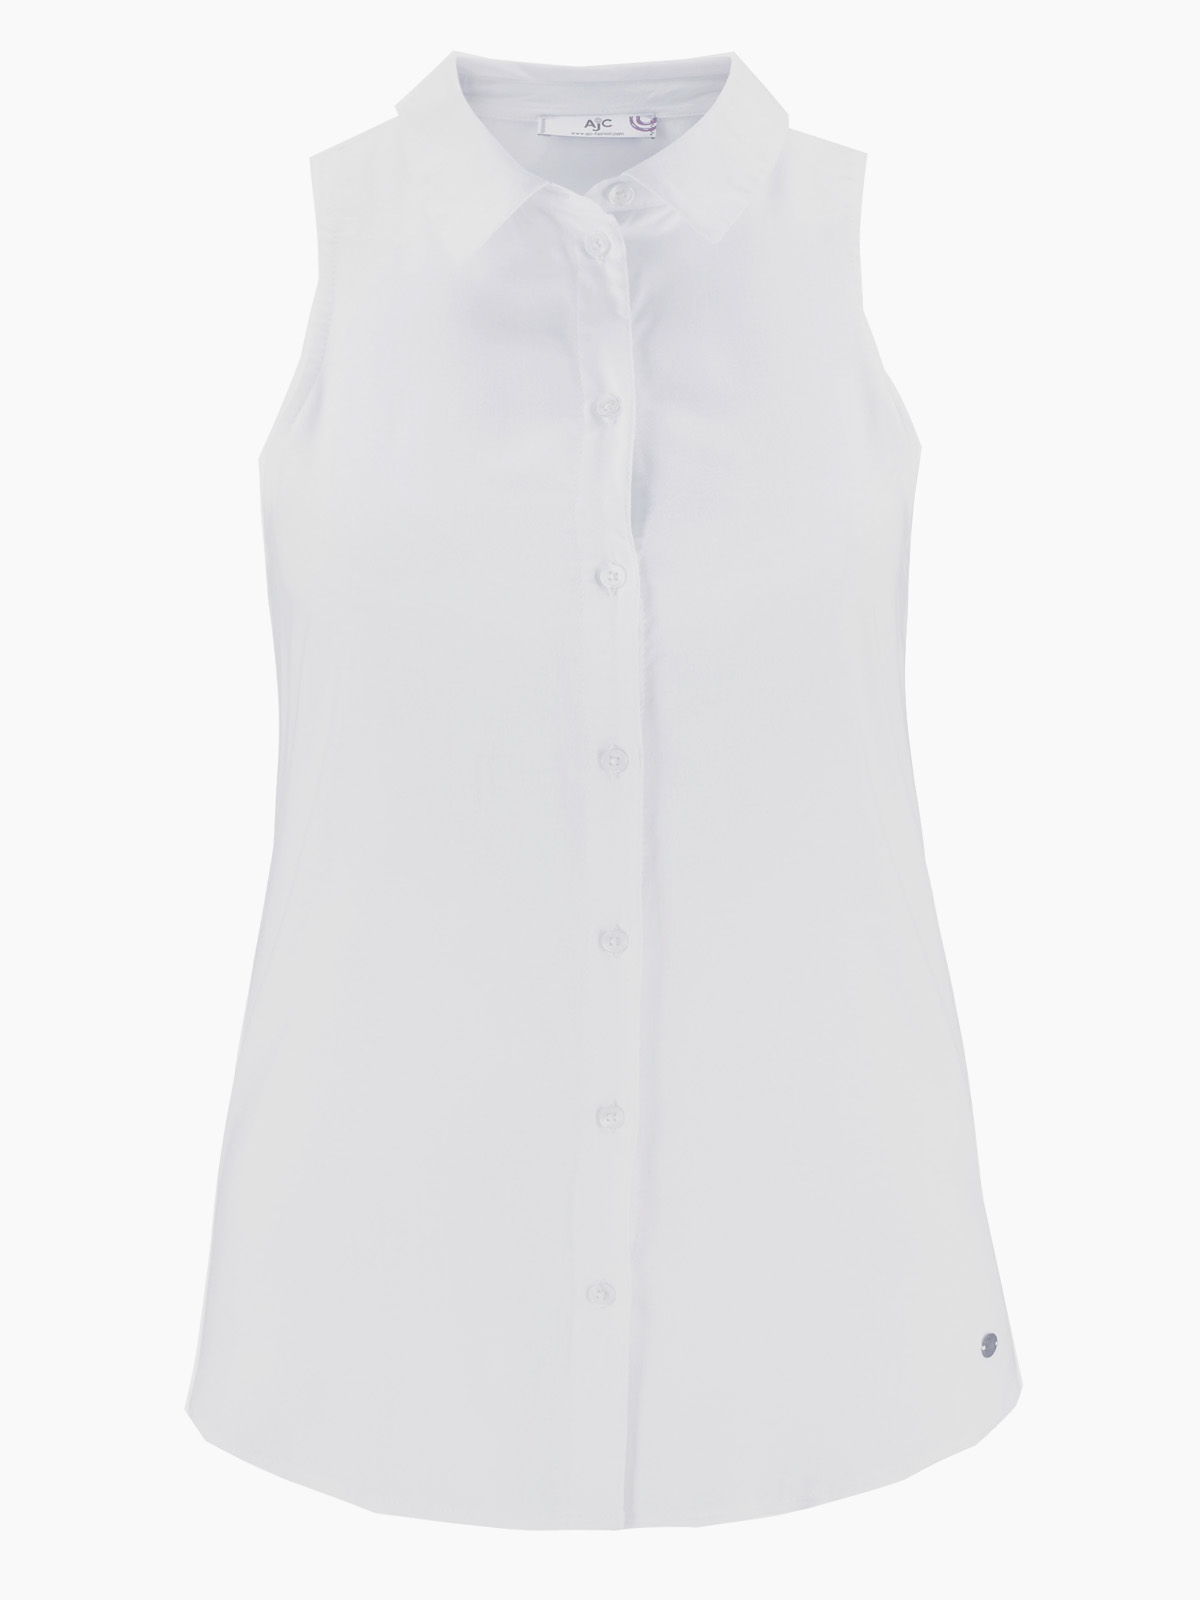 AJC - - AJC WHITE Sleeveless Button Through Shirt - Size 14 (EU 40)